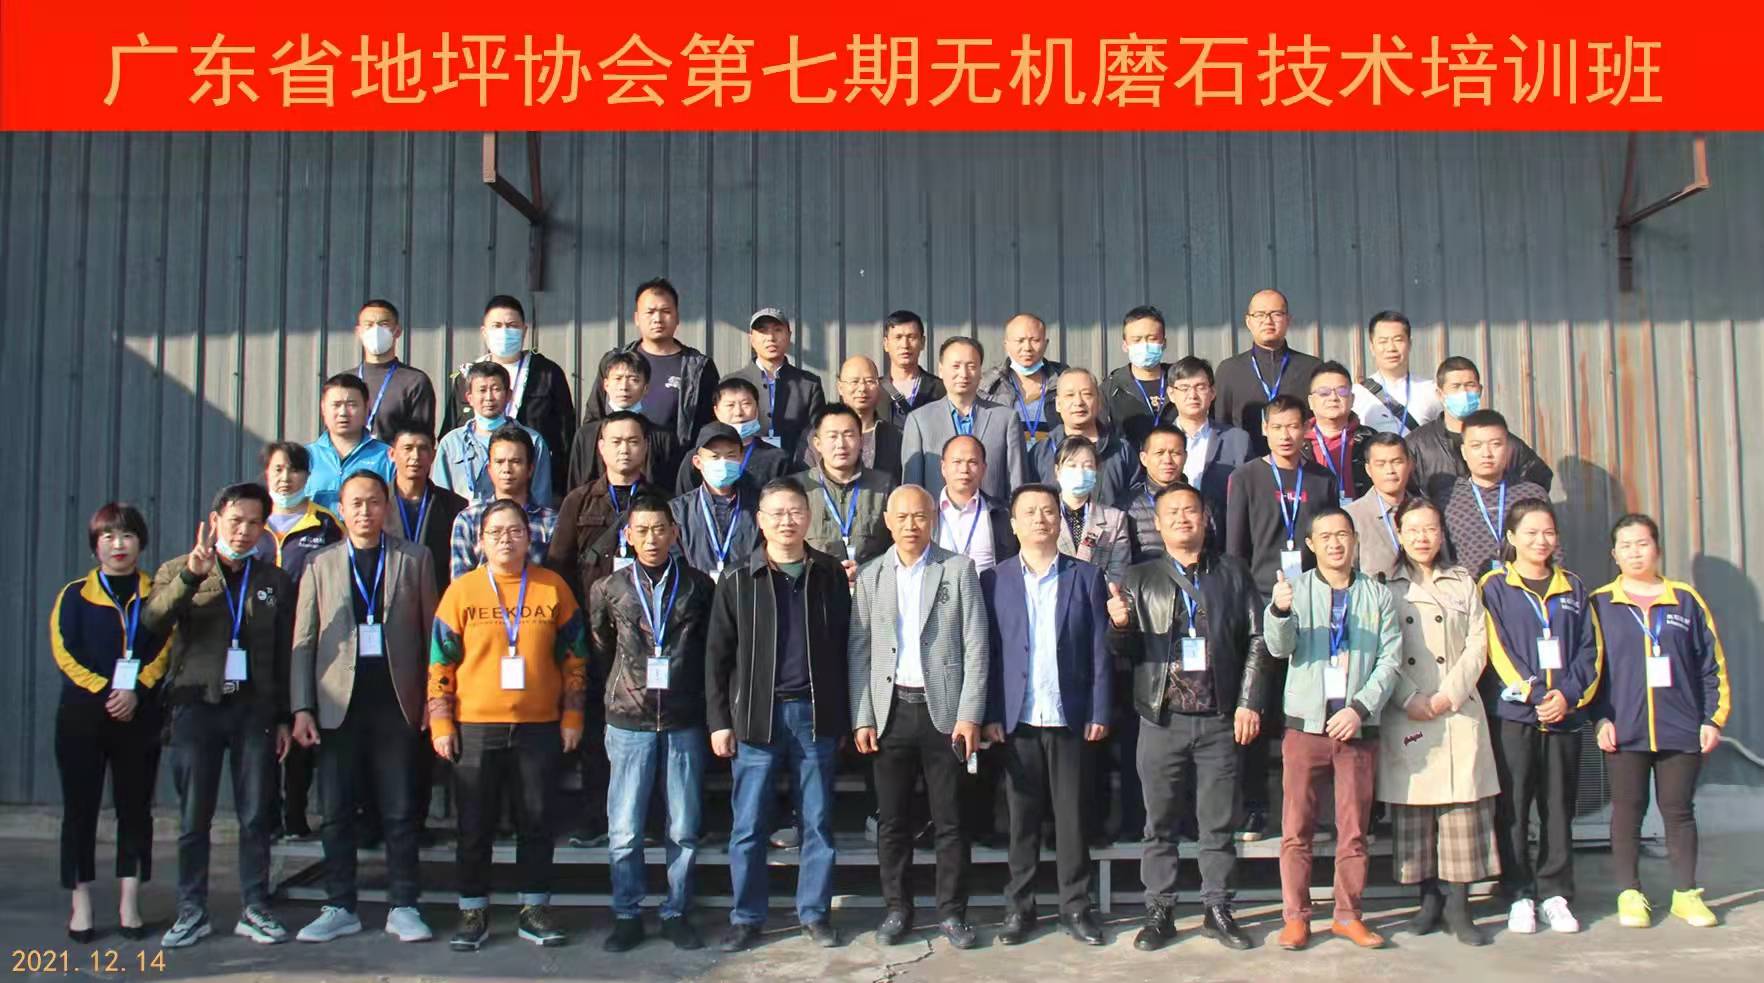 廣東省地坪協會第七期無機磨石技術培訓班合影